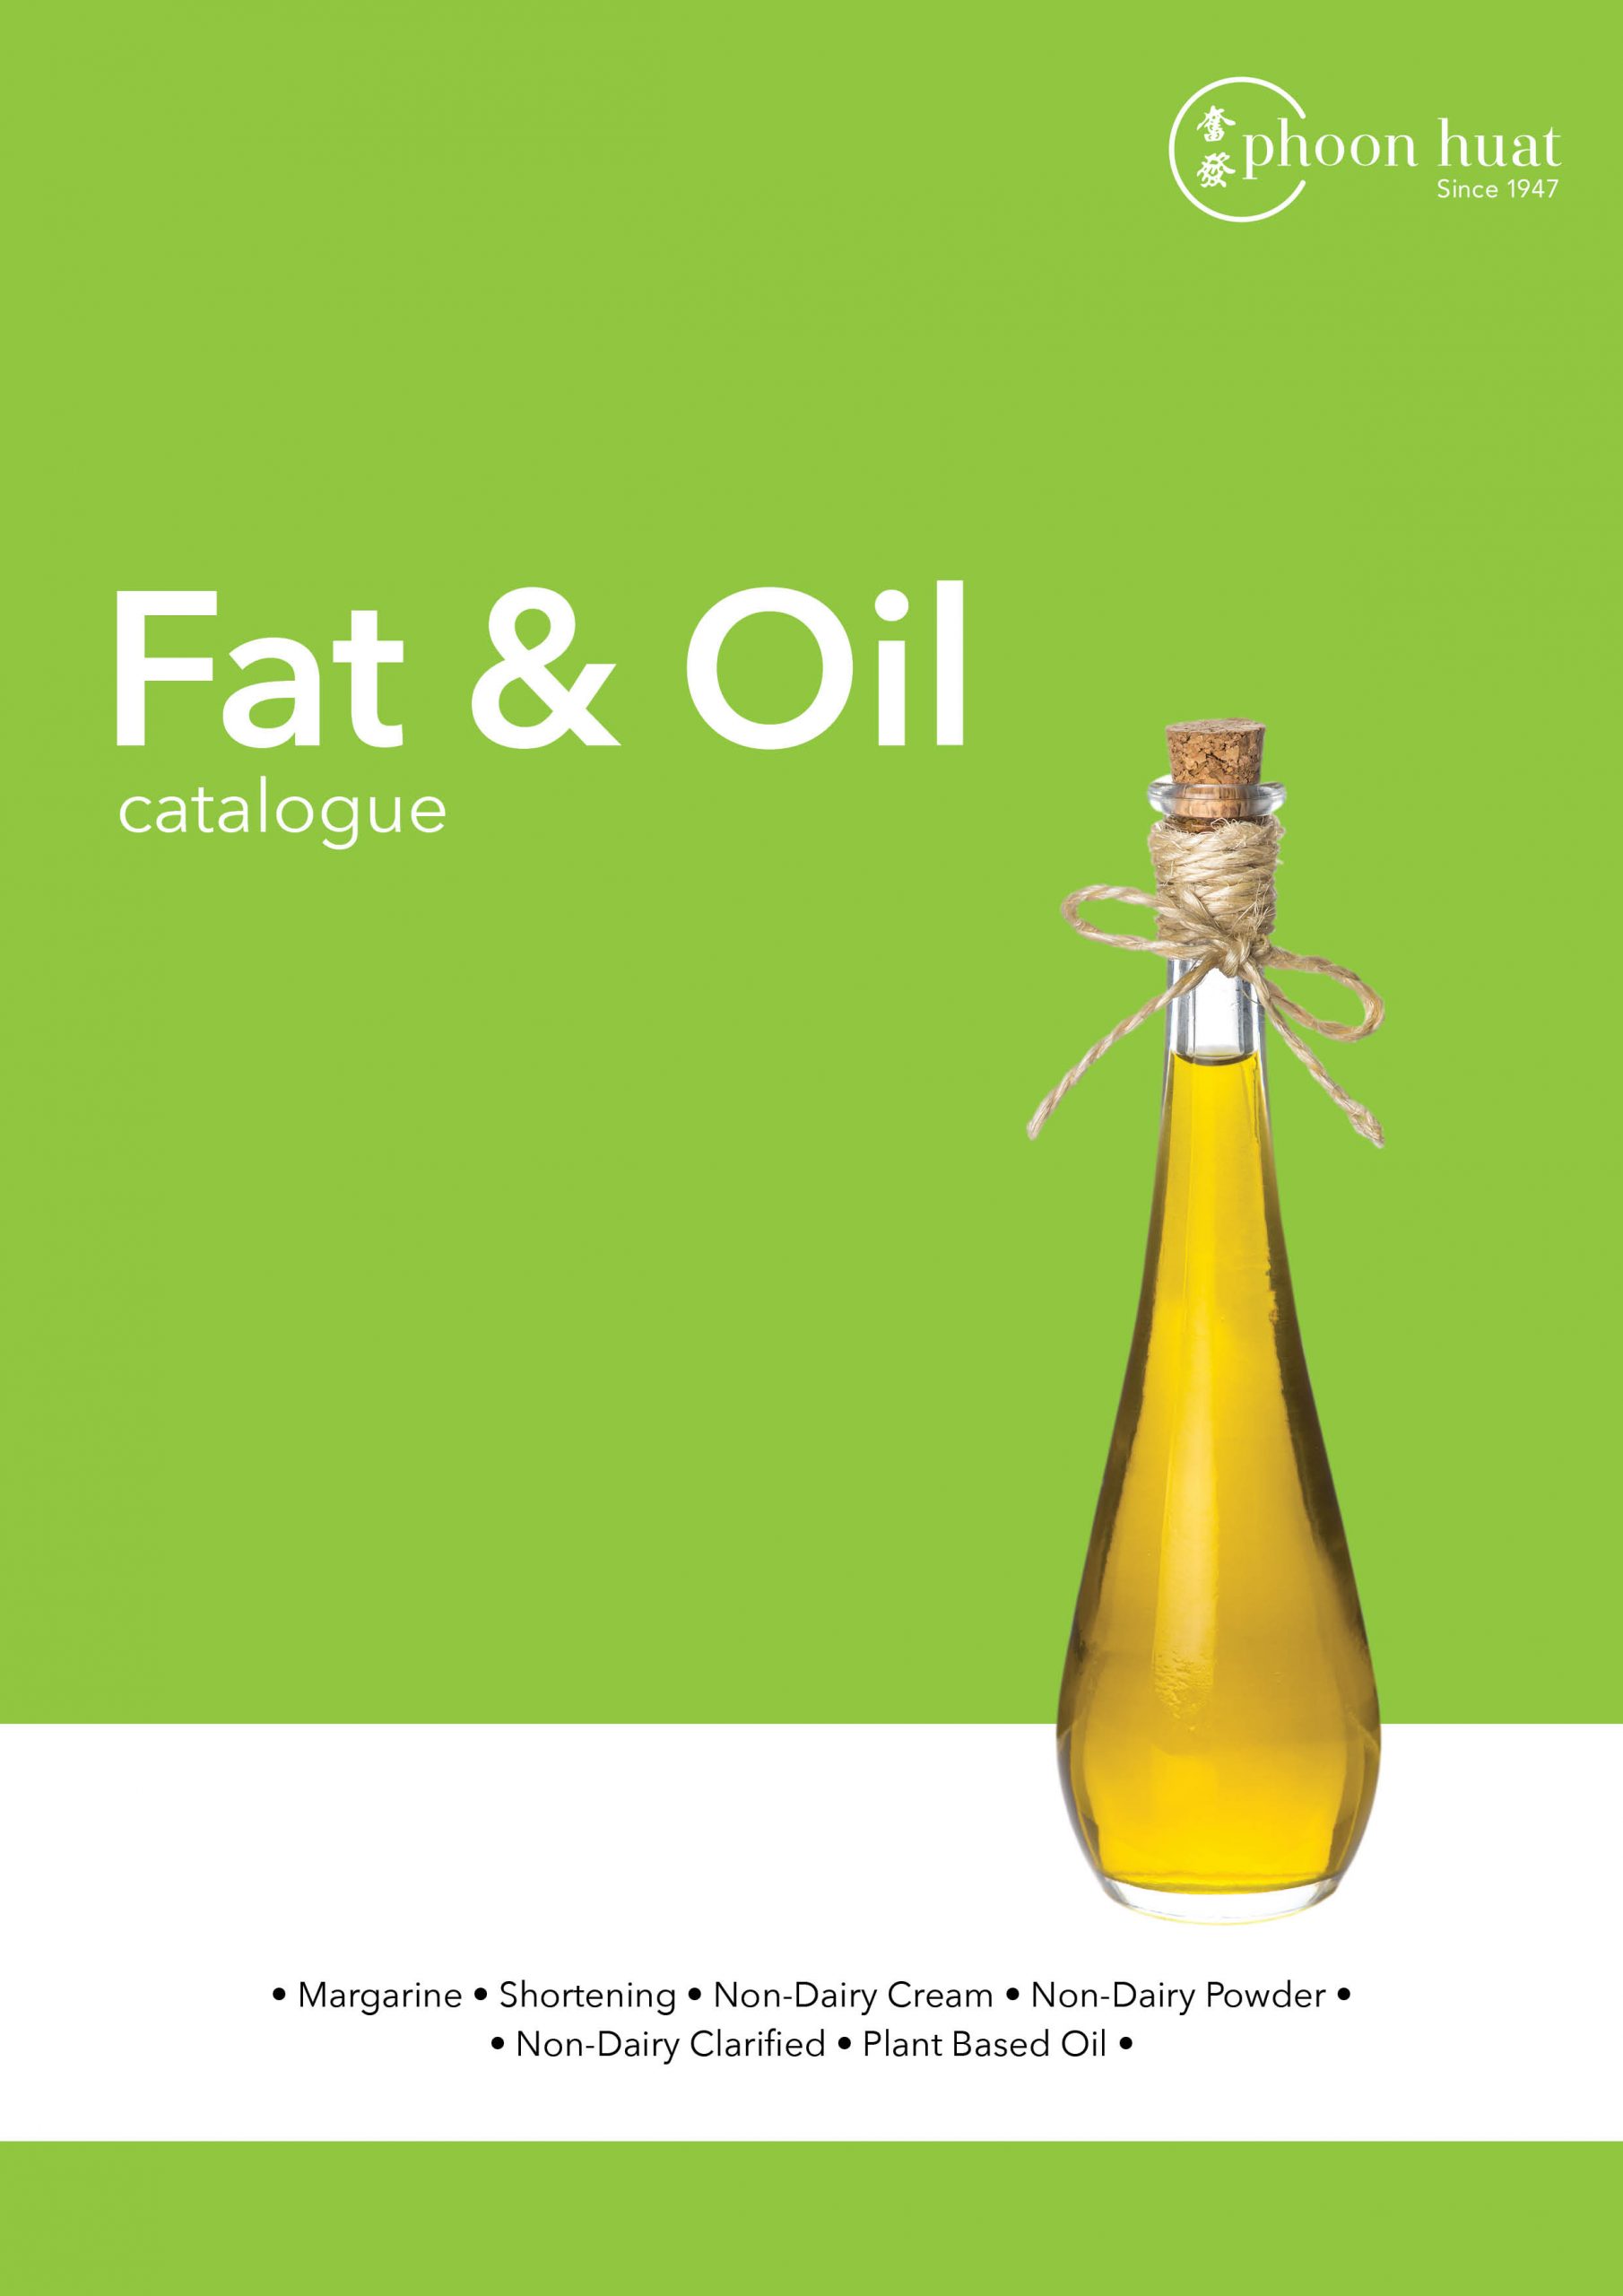 General Catalogue – Fat & Oil